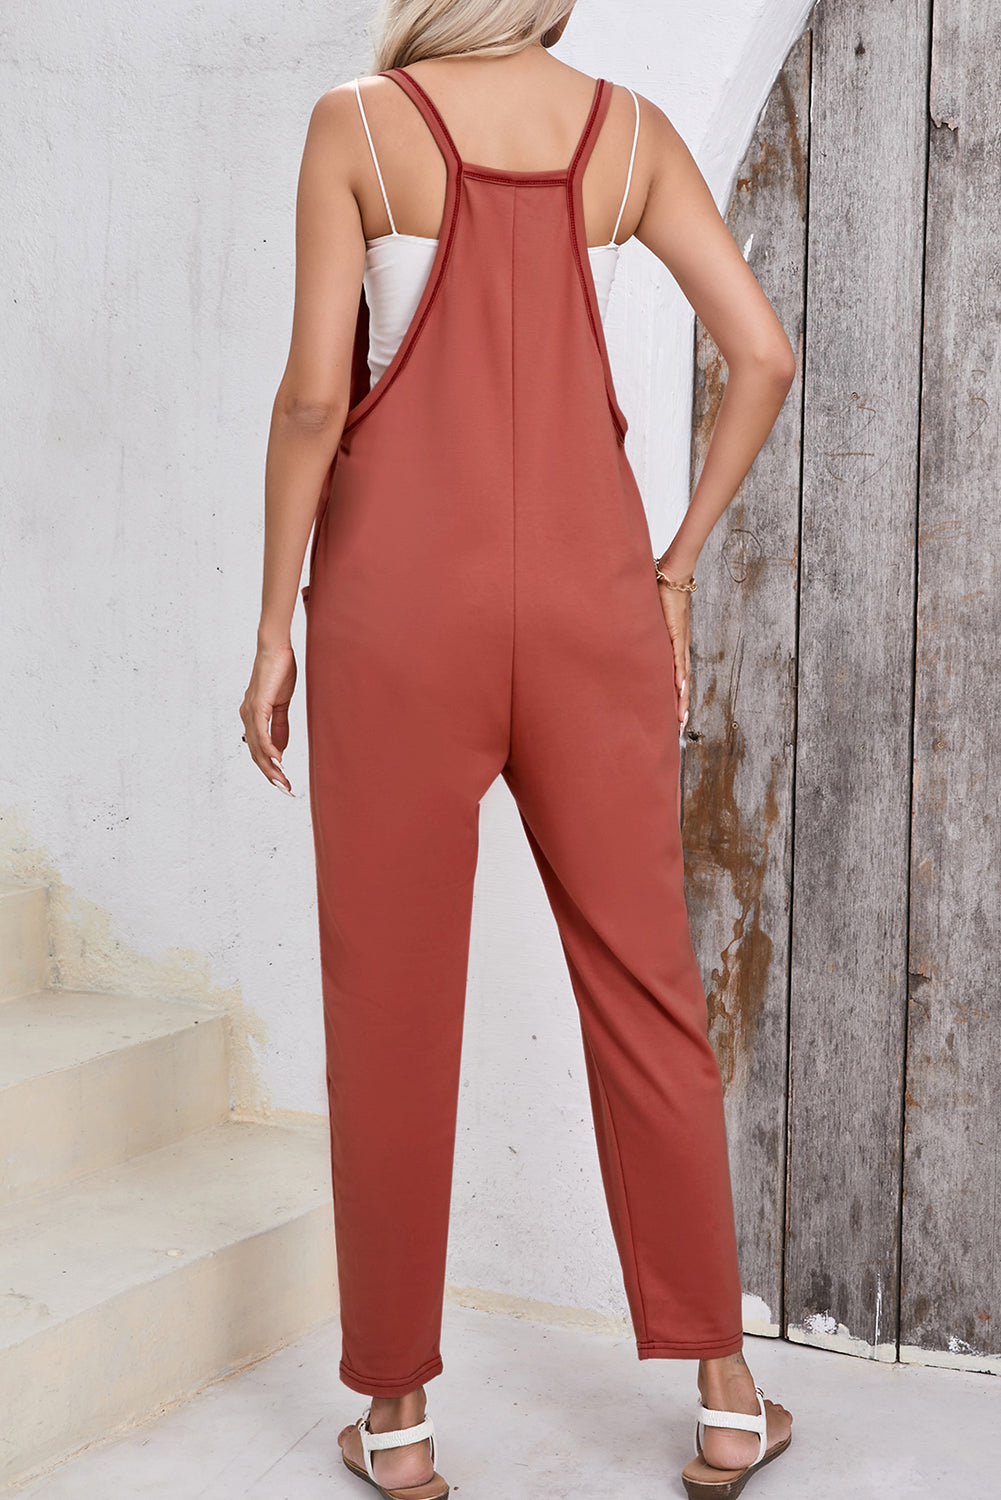 Gold Flame Side Pockets Harem Pants Sleeveless V Neck Jumpsuit Jumpsuits & Rompers JT's Designer Fashion